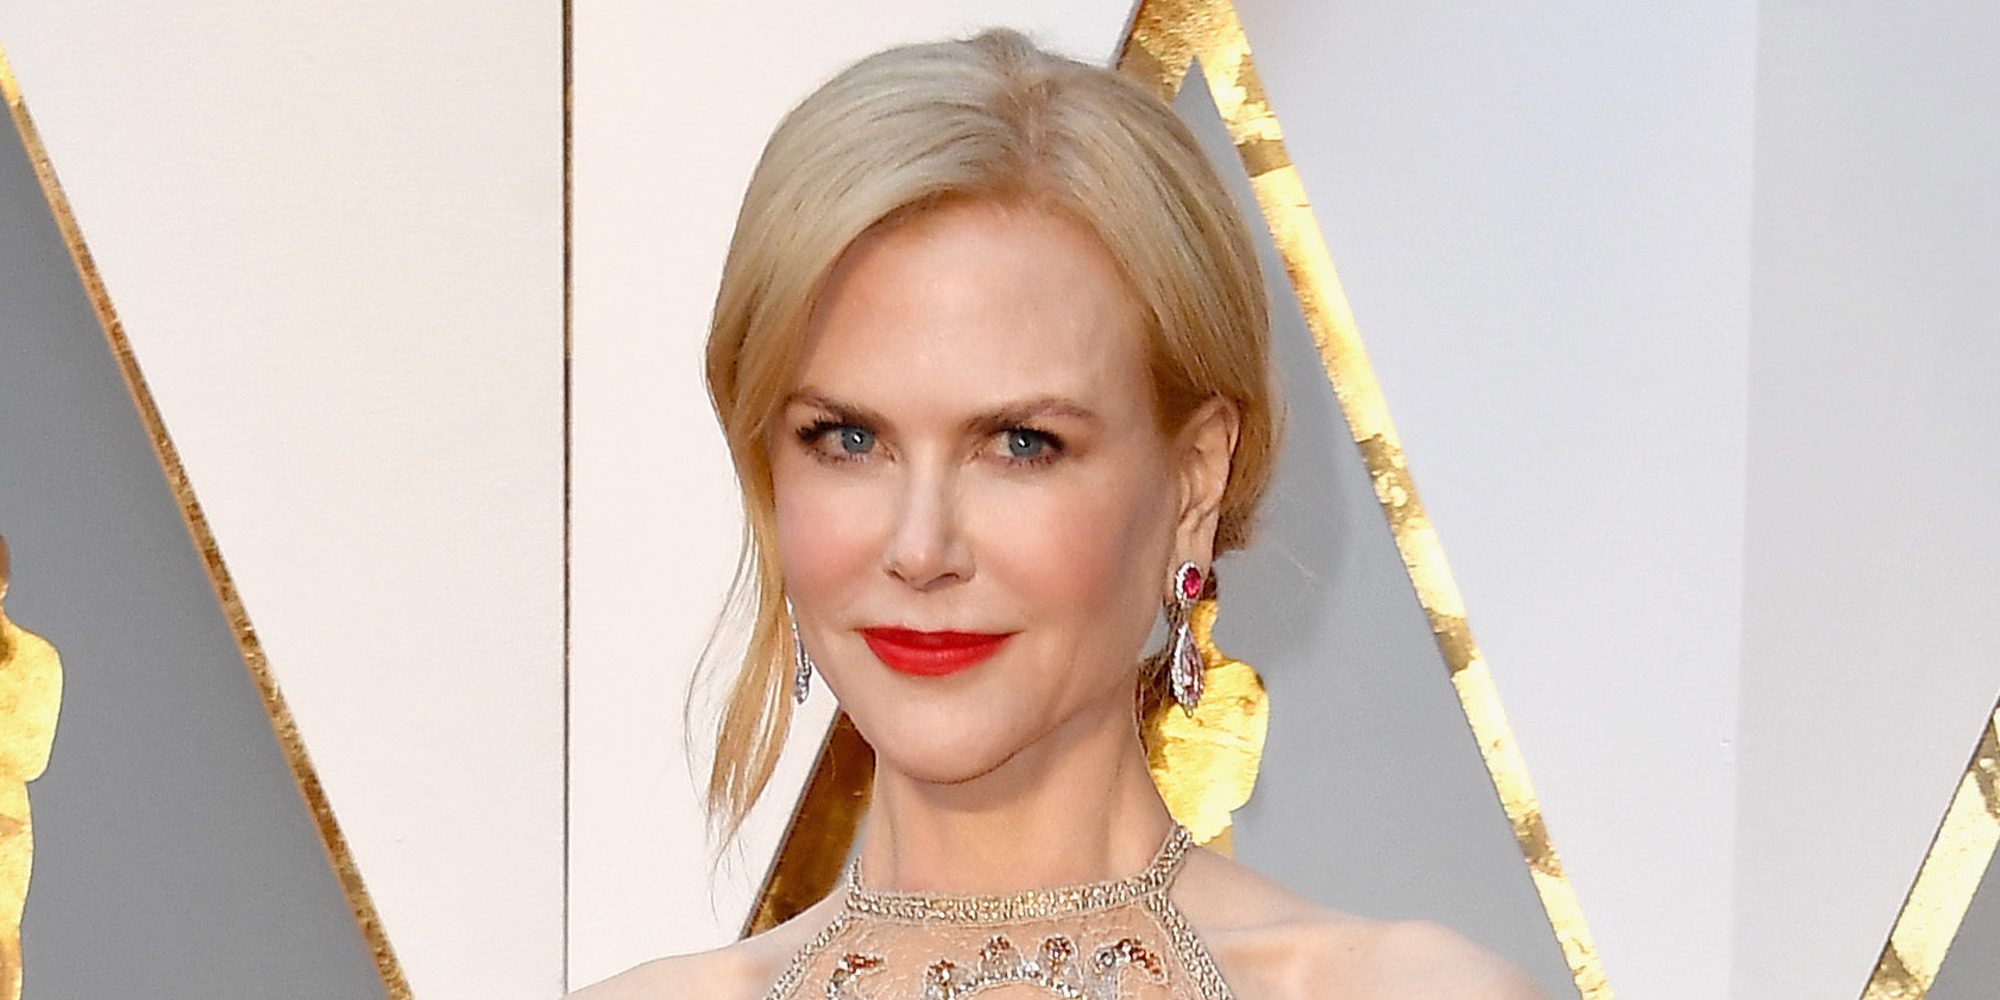 Nicole Kidman se convierte en protagonista indirecta de los Oscar 2017 por su forma de aplaudir